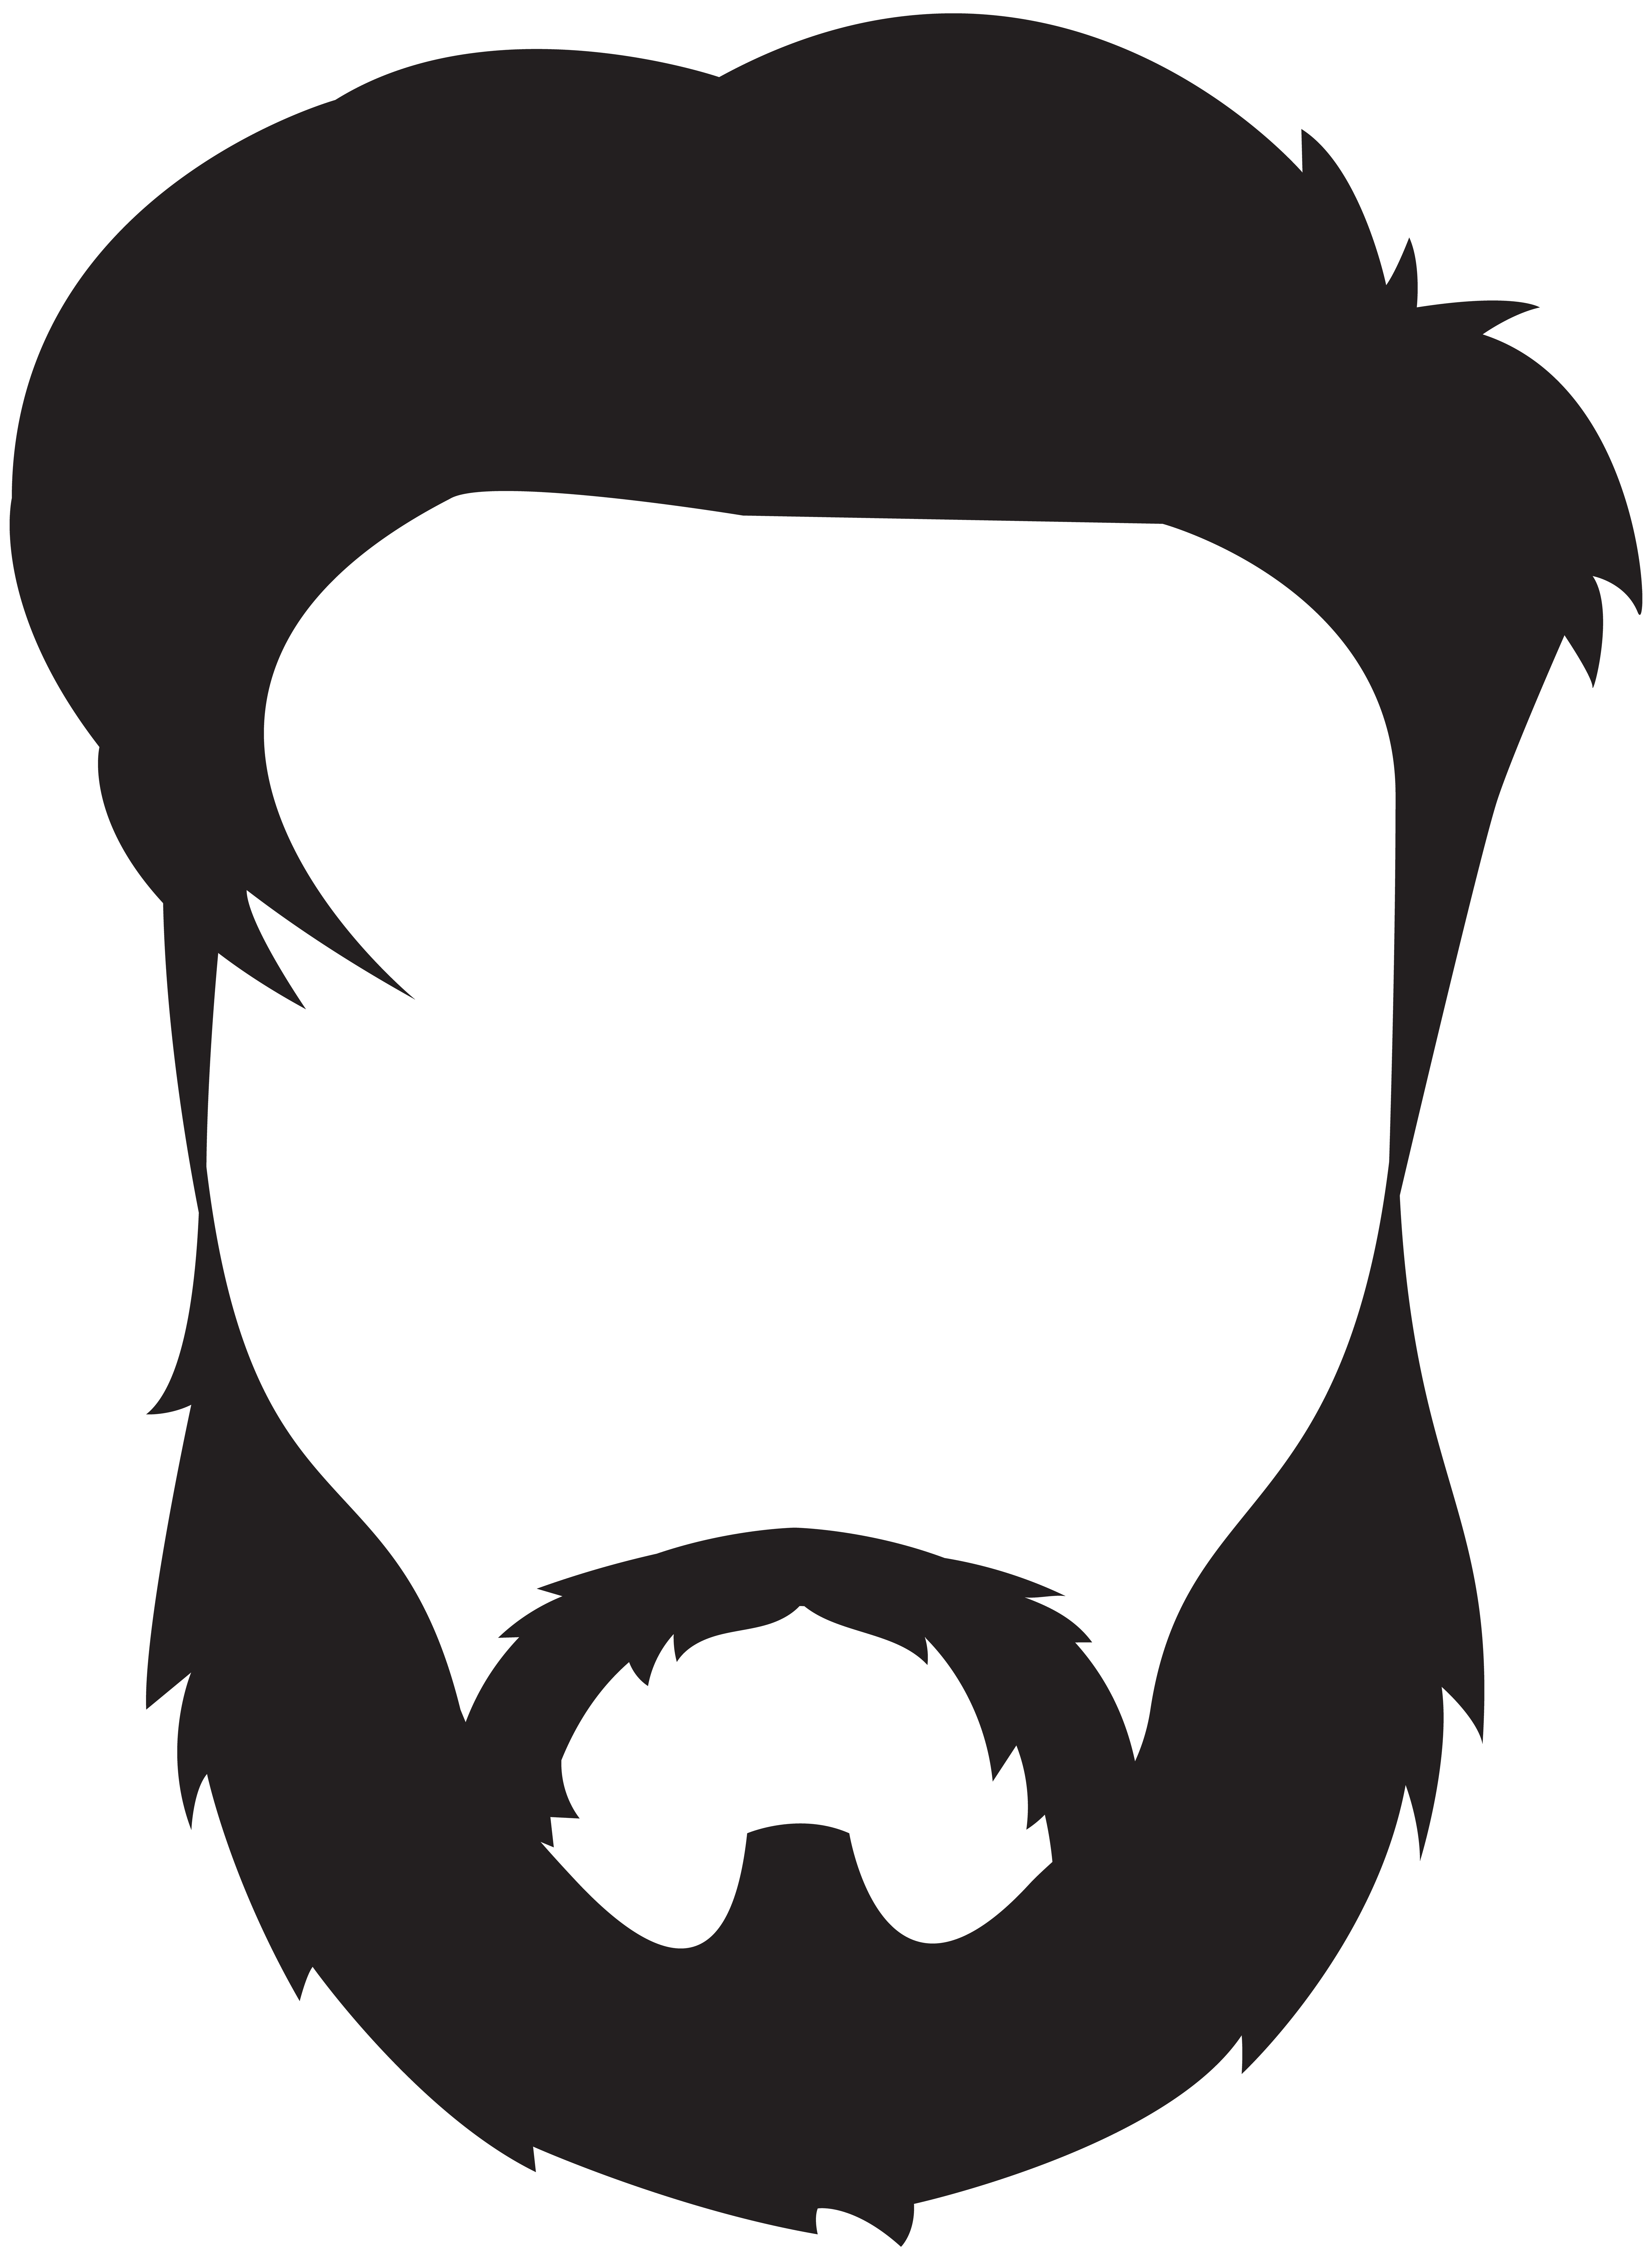 Man Hair Beard Mustache PNG Clip Art Image.